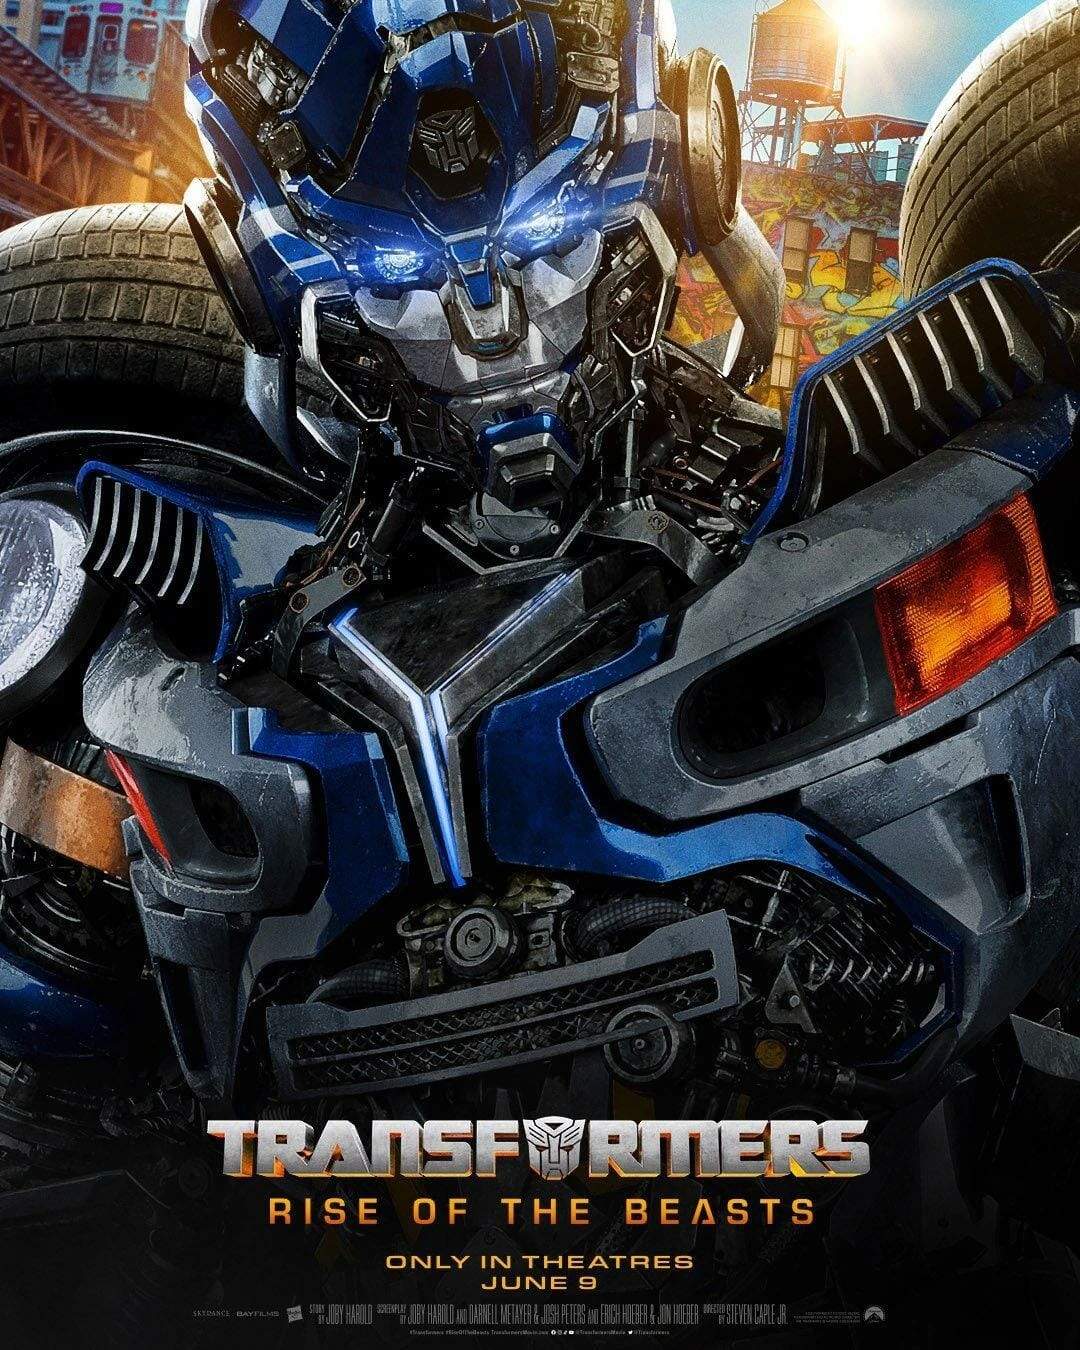 Divulgado primeiro pôster da sequência de “Transformers”